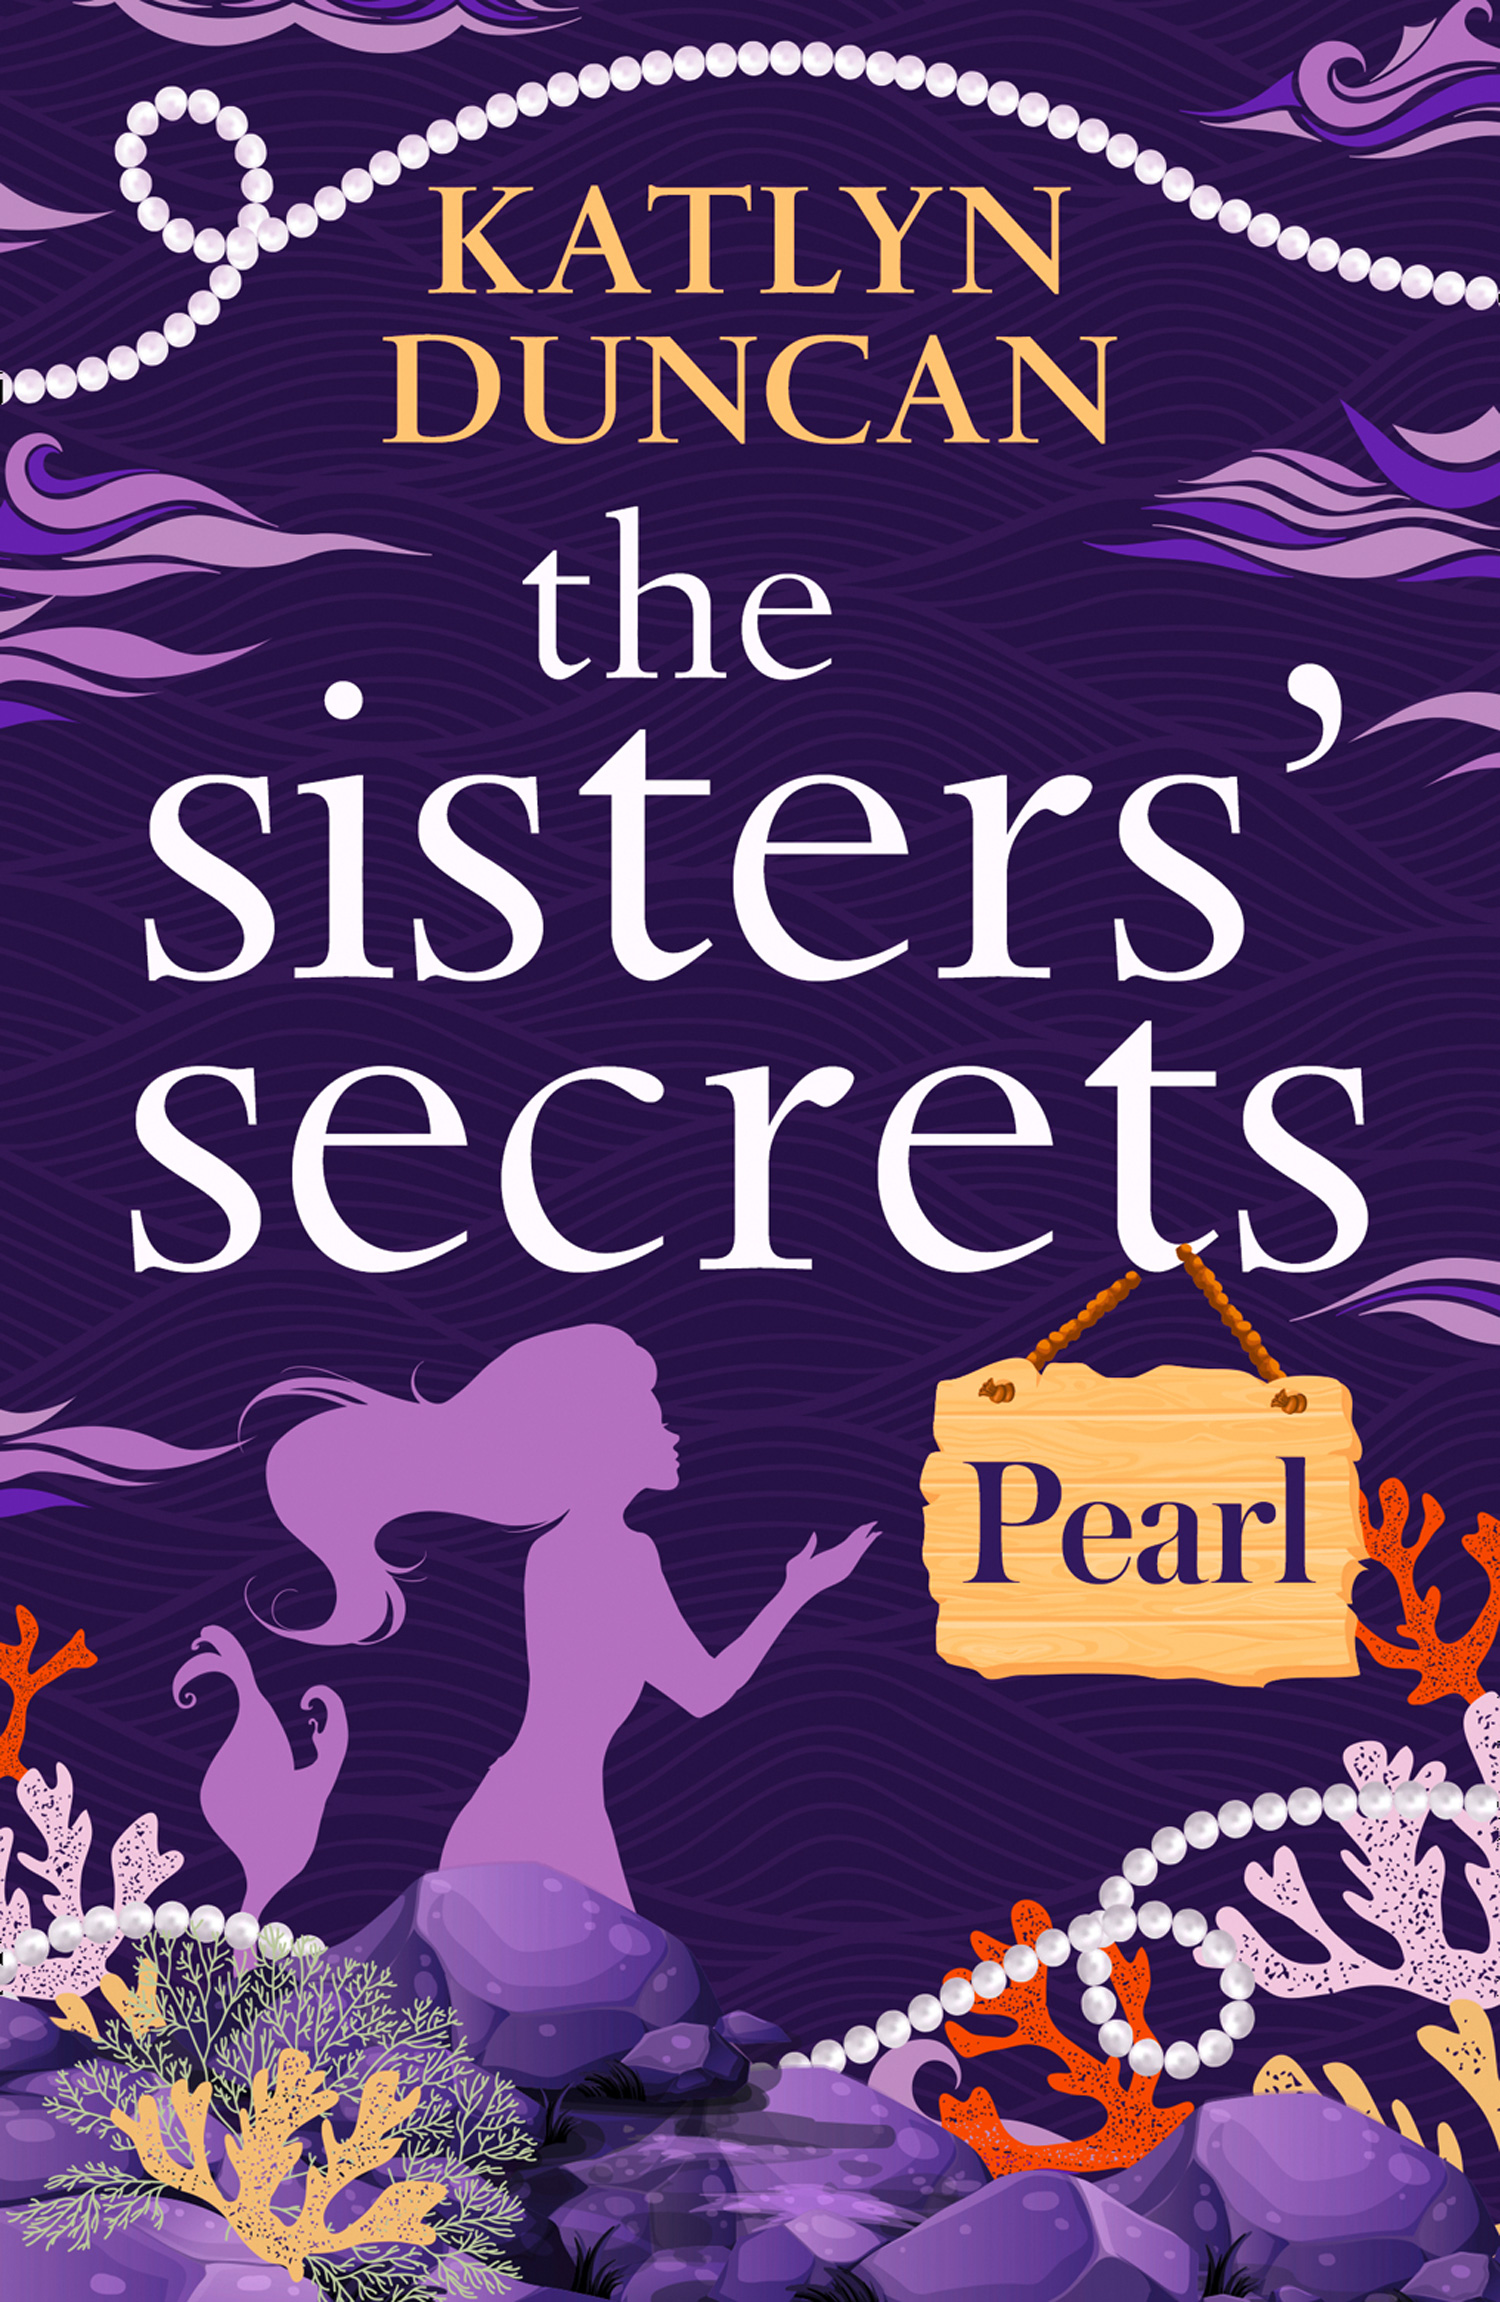 The secret sisters. Sisterhood Secrets. Arcane sisters.